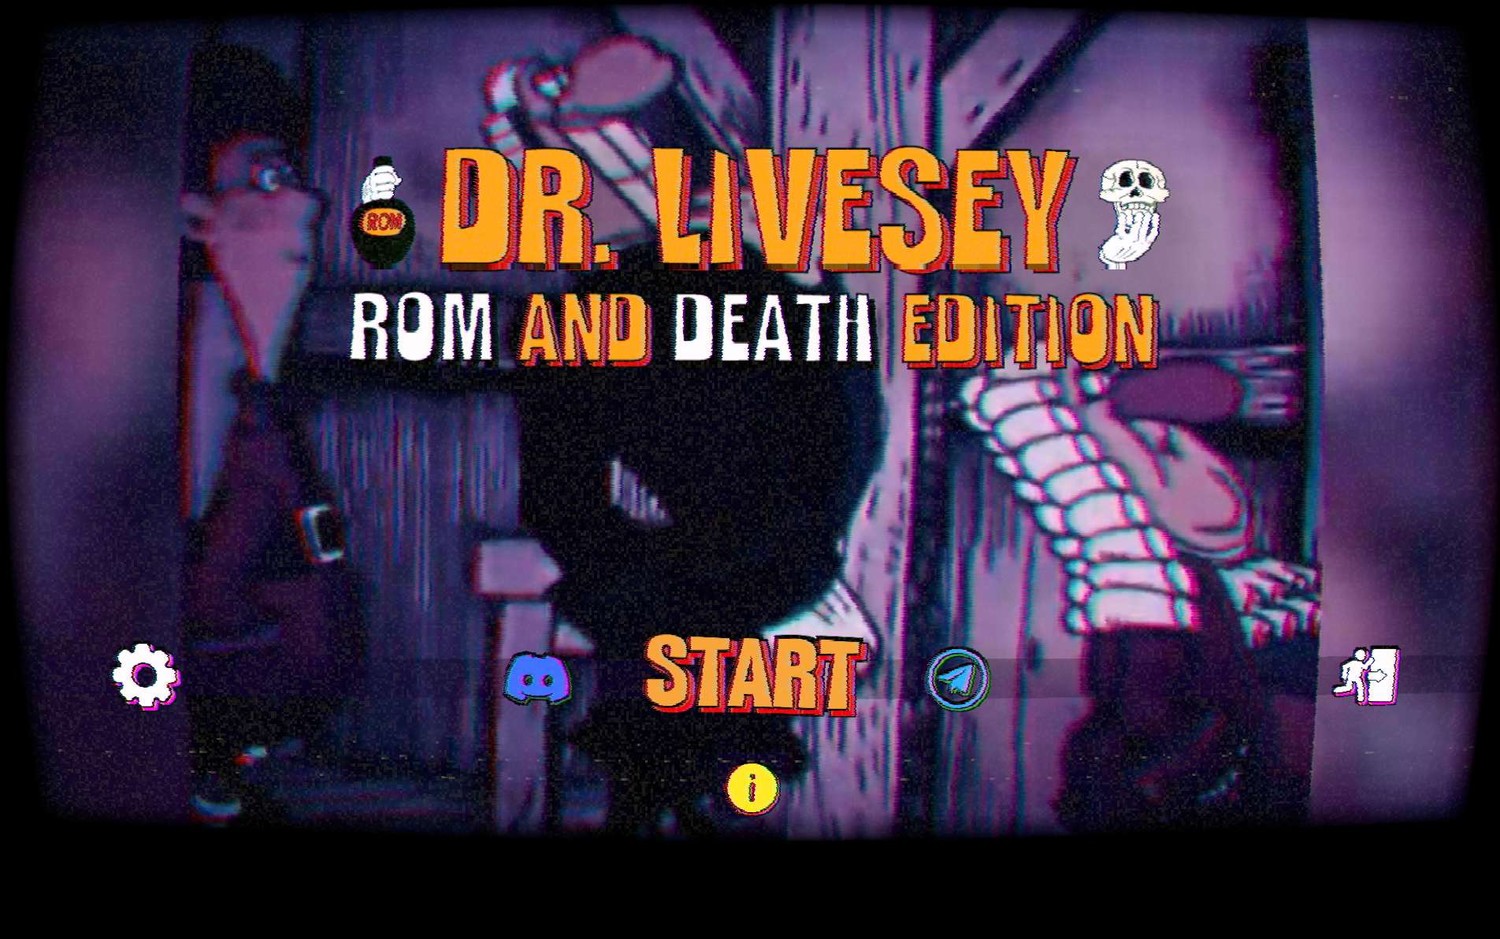 Dr Livesey Rom And Death Edition — обзоры и отзывы, описание, дата выхода,  официальный сайт игры, системные требования и оценки игроков